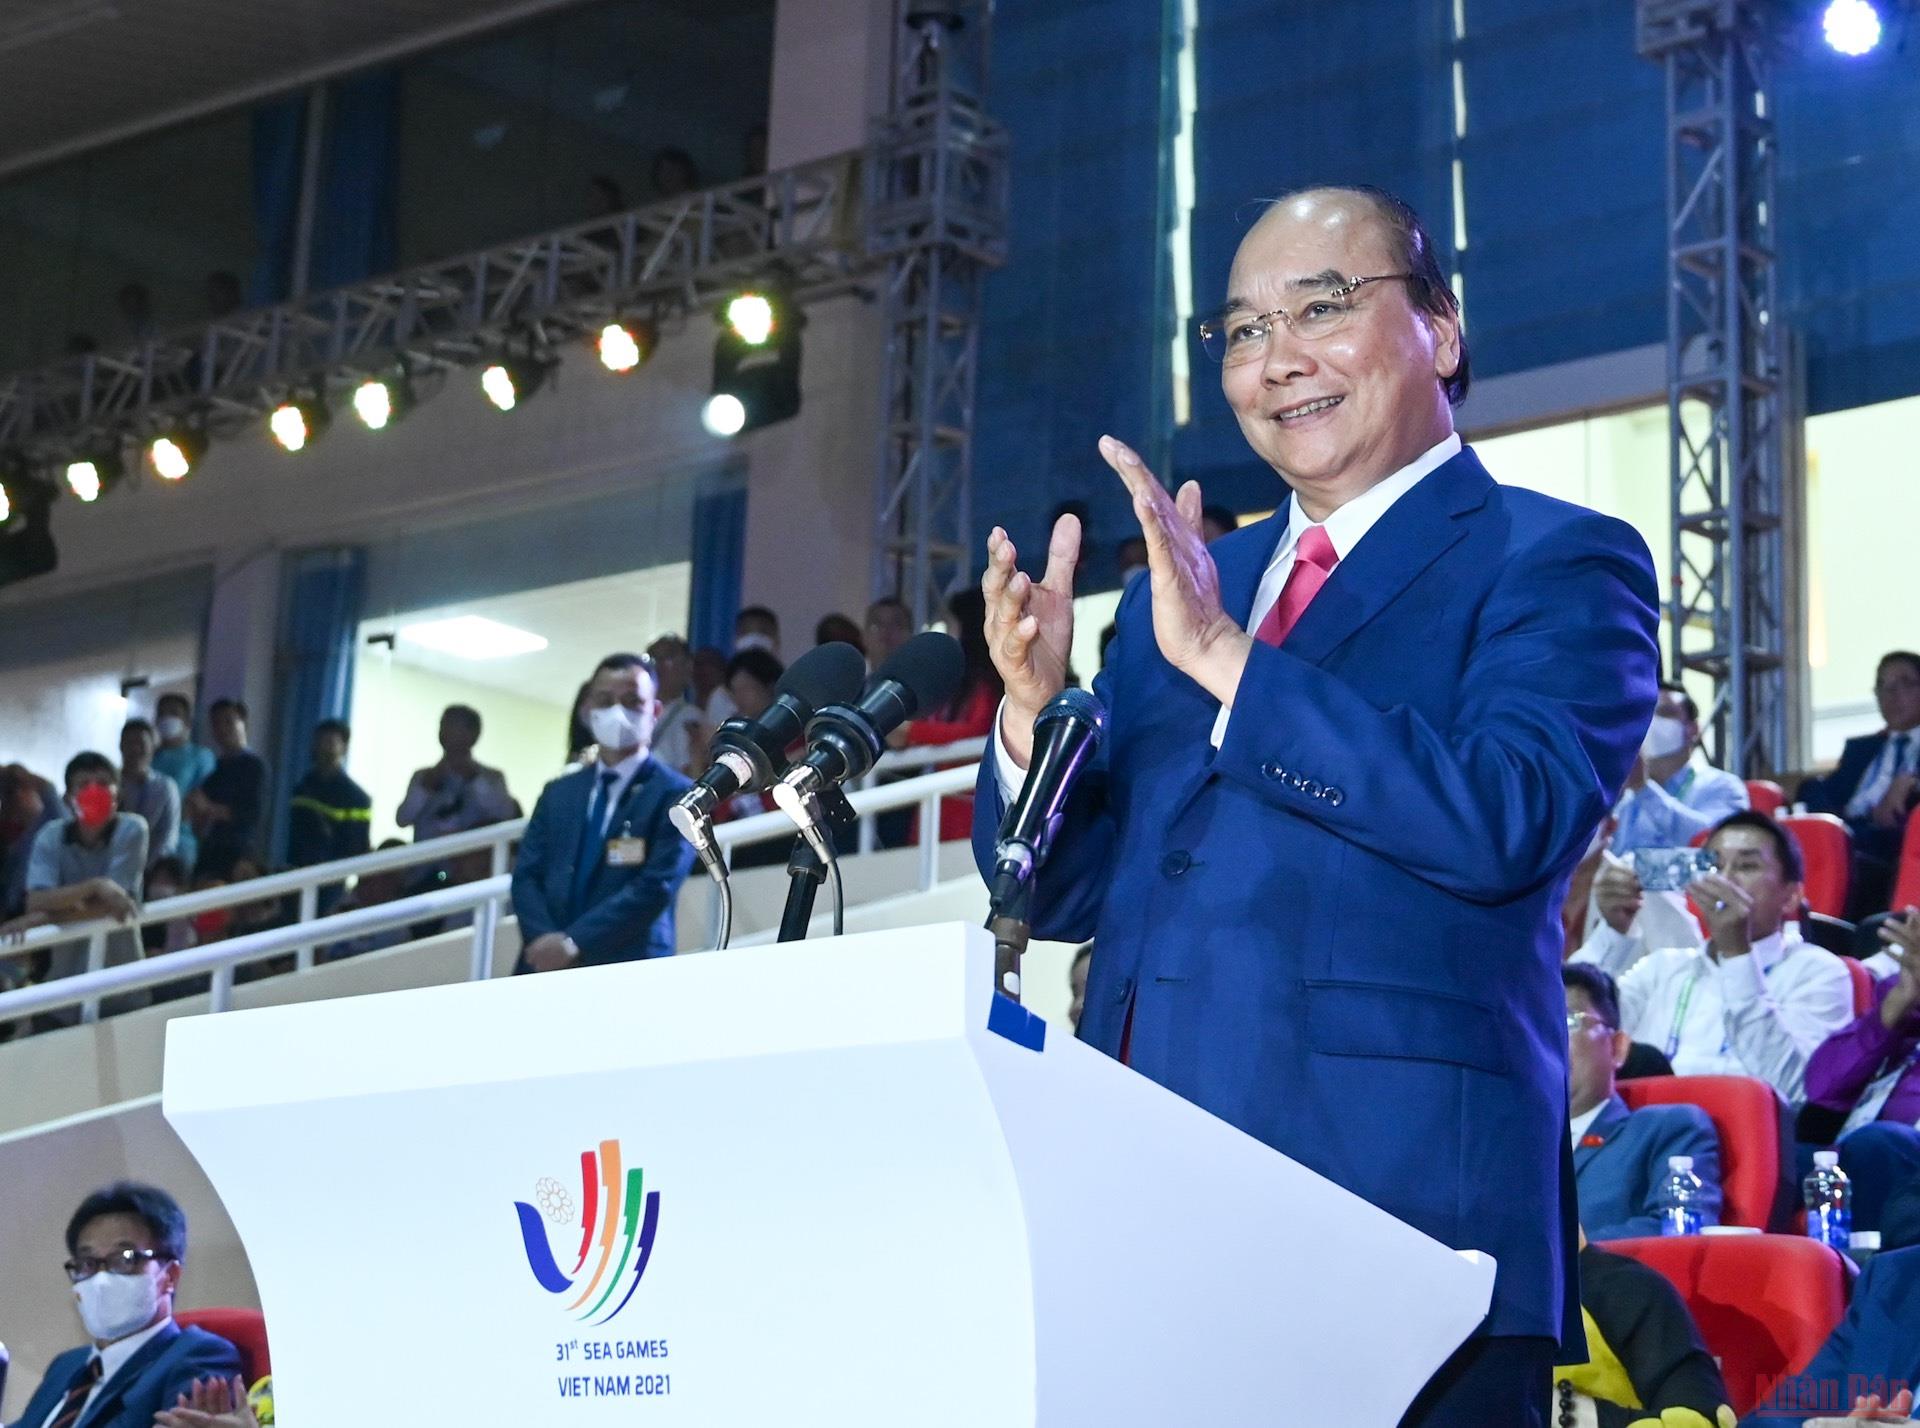 Chủ tịch nước Nguyễn Xuân Phúc tuyên bố khai mạc SEA Games 31 